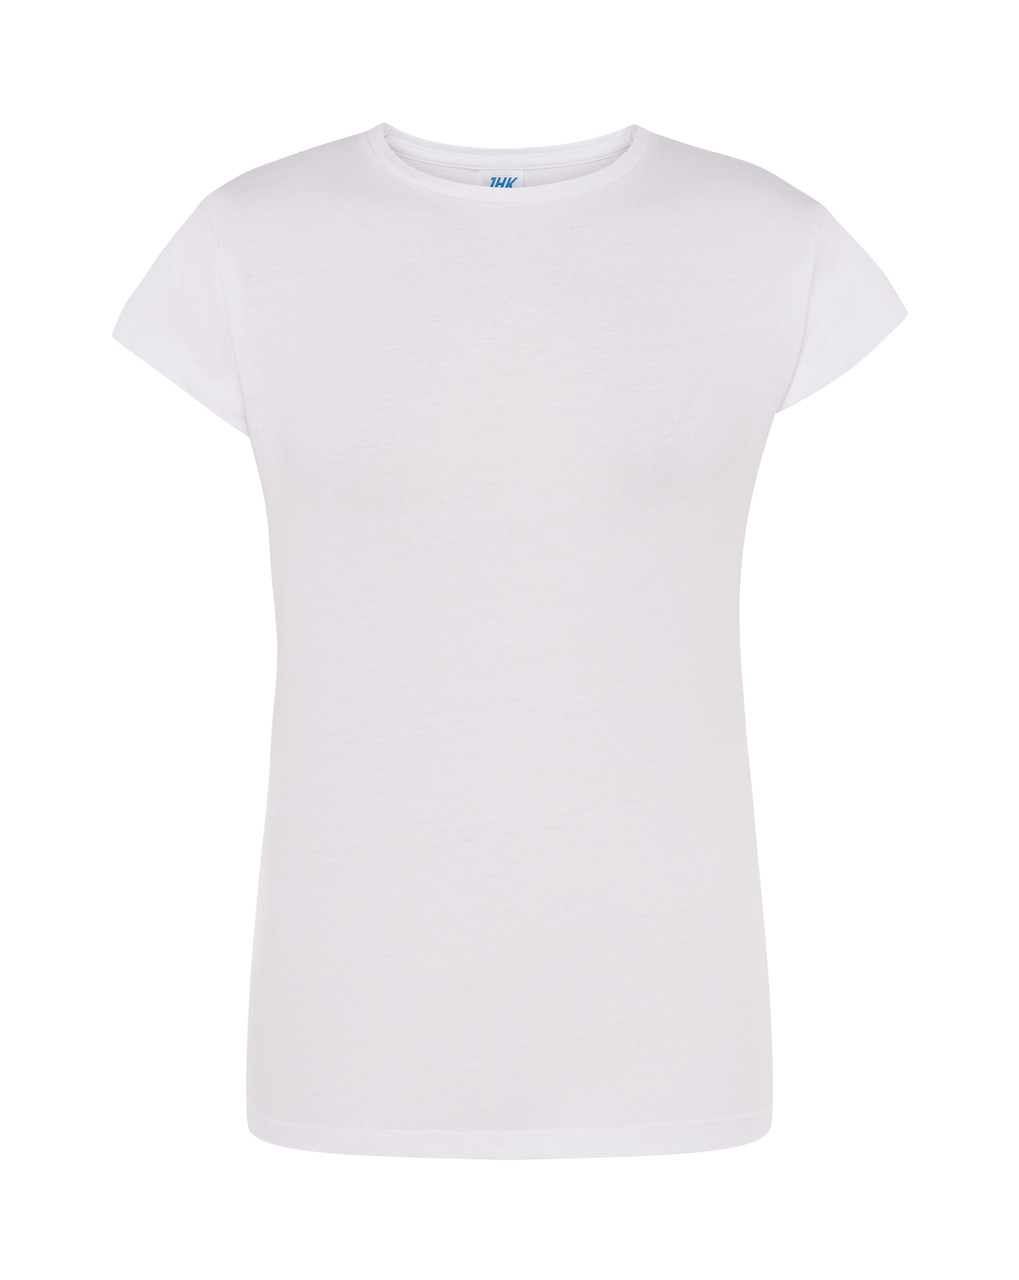 Жіноча футболка JHK LADY REGULAR COMFORT, розмір L, Біла (TSRLCMF-Wh)